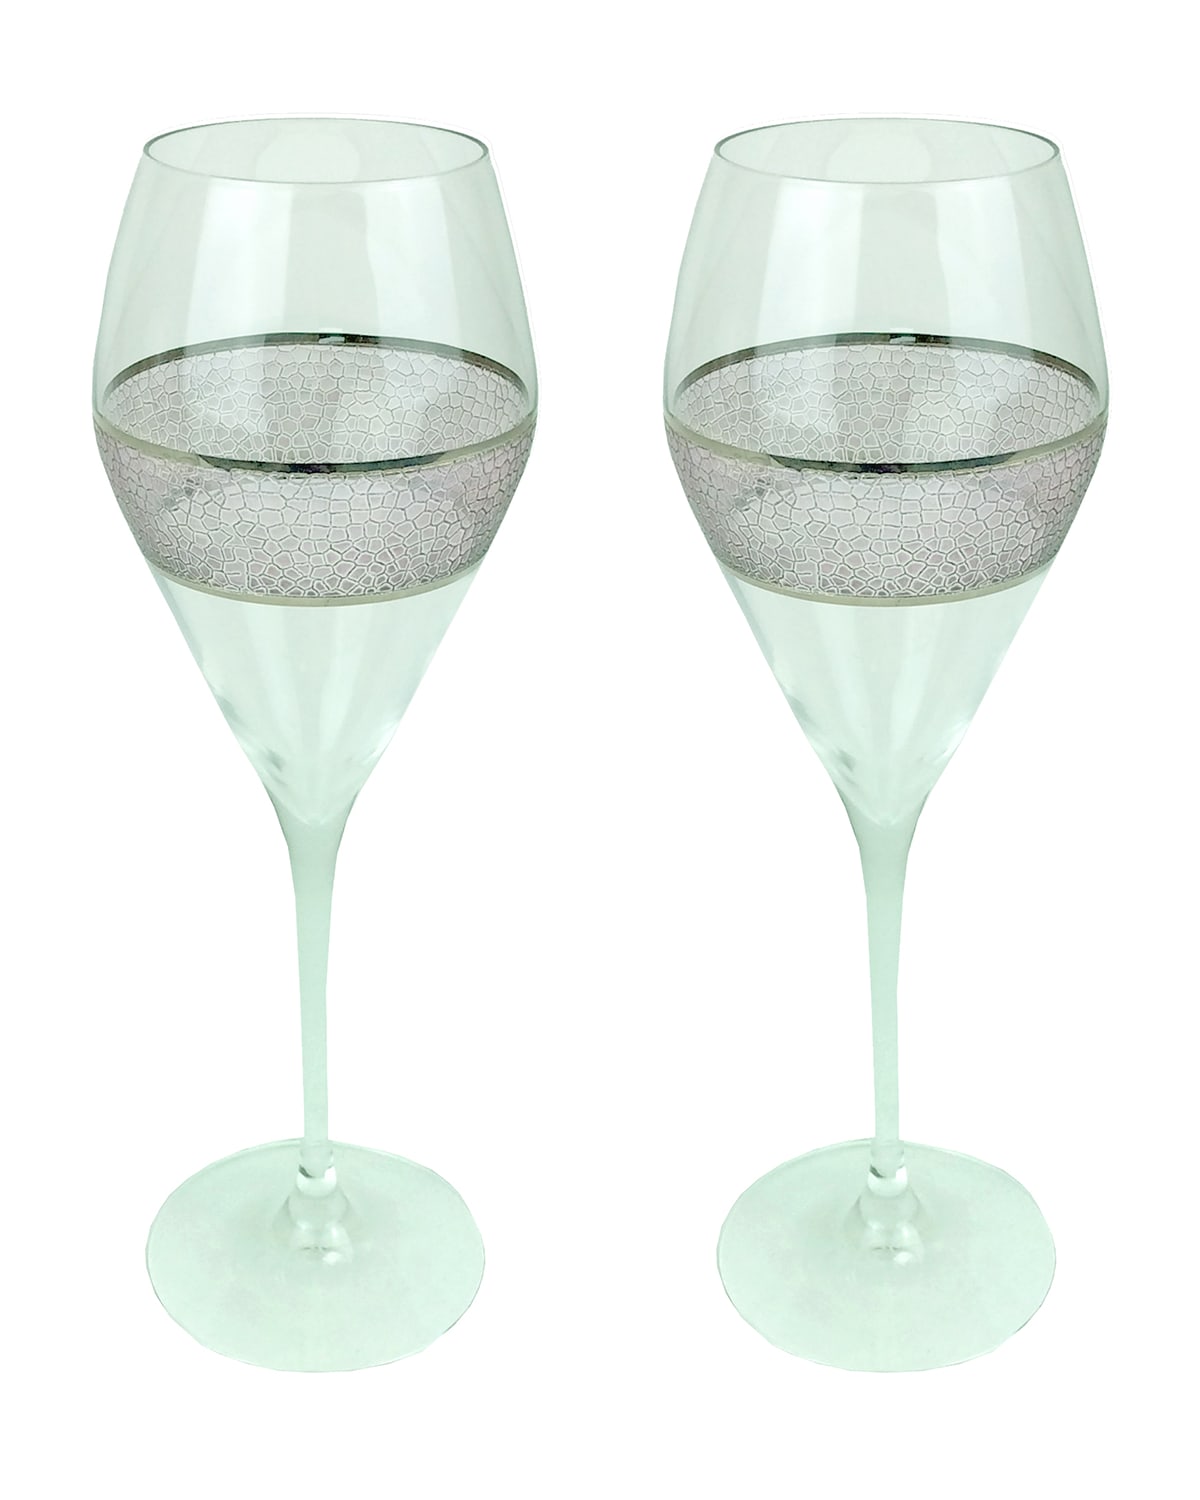 Michael Wainwright Panthera Champagne Glasses, Set Of 2